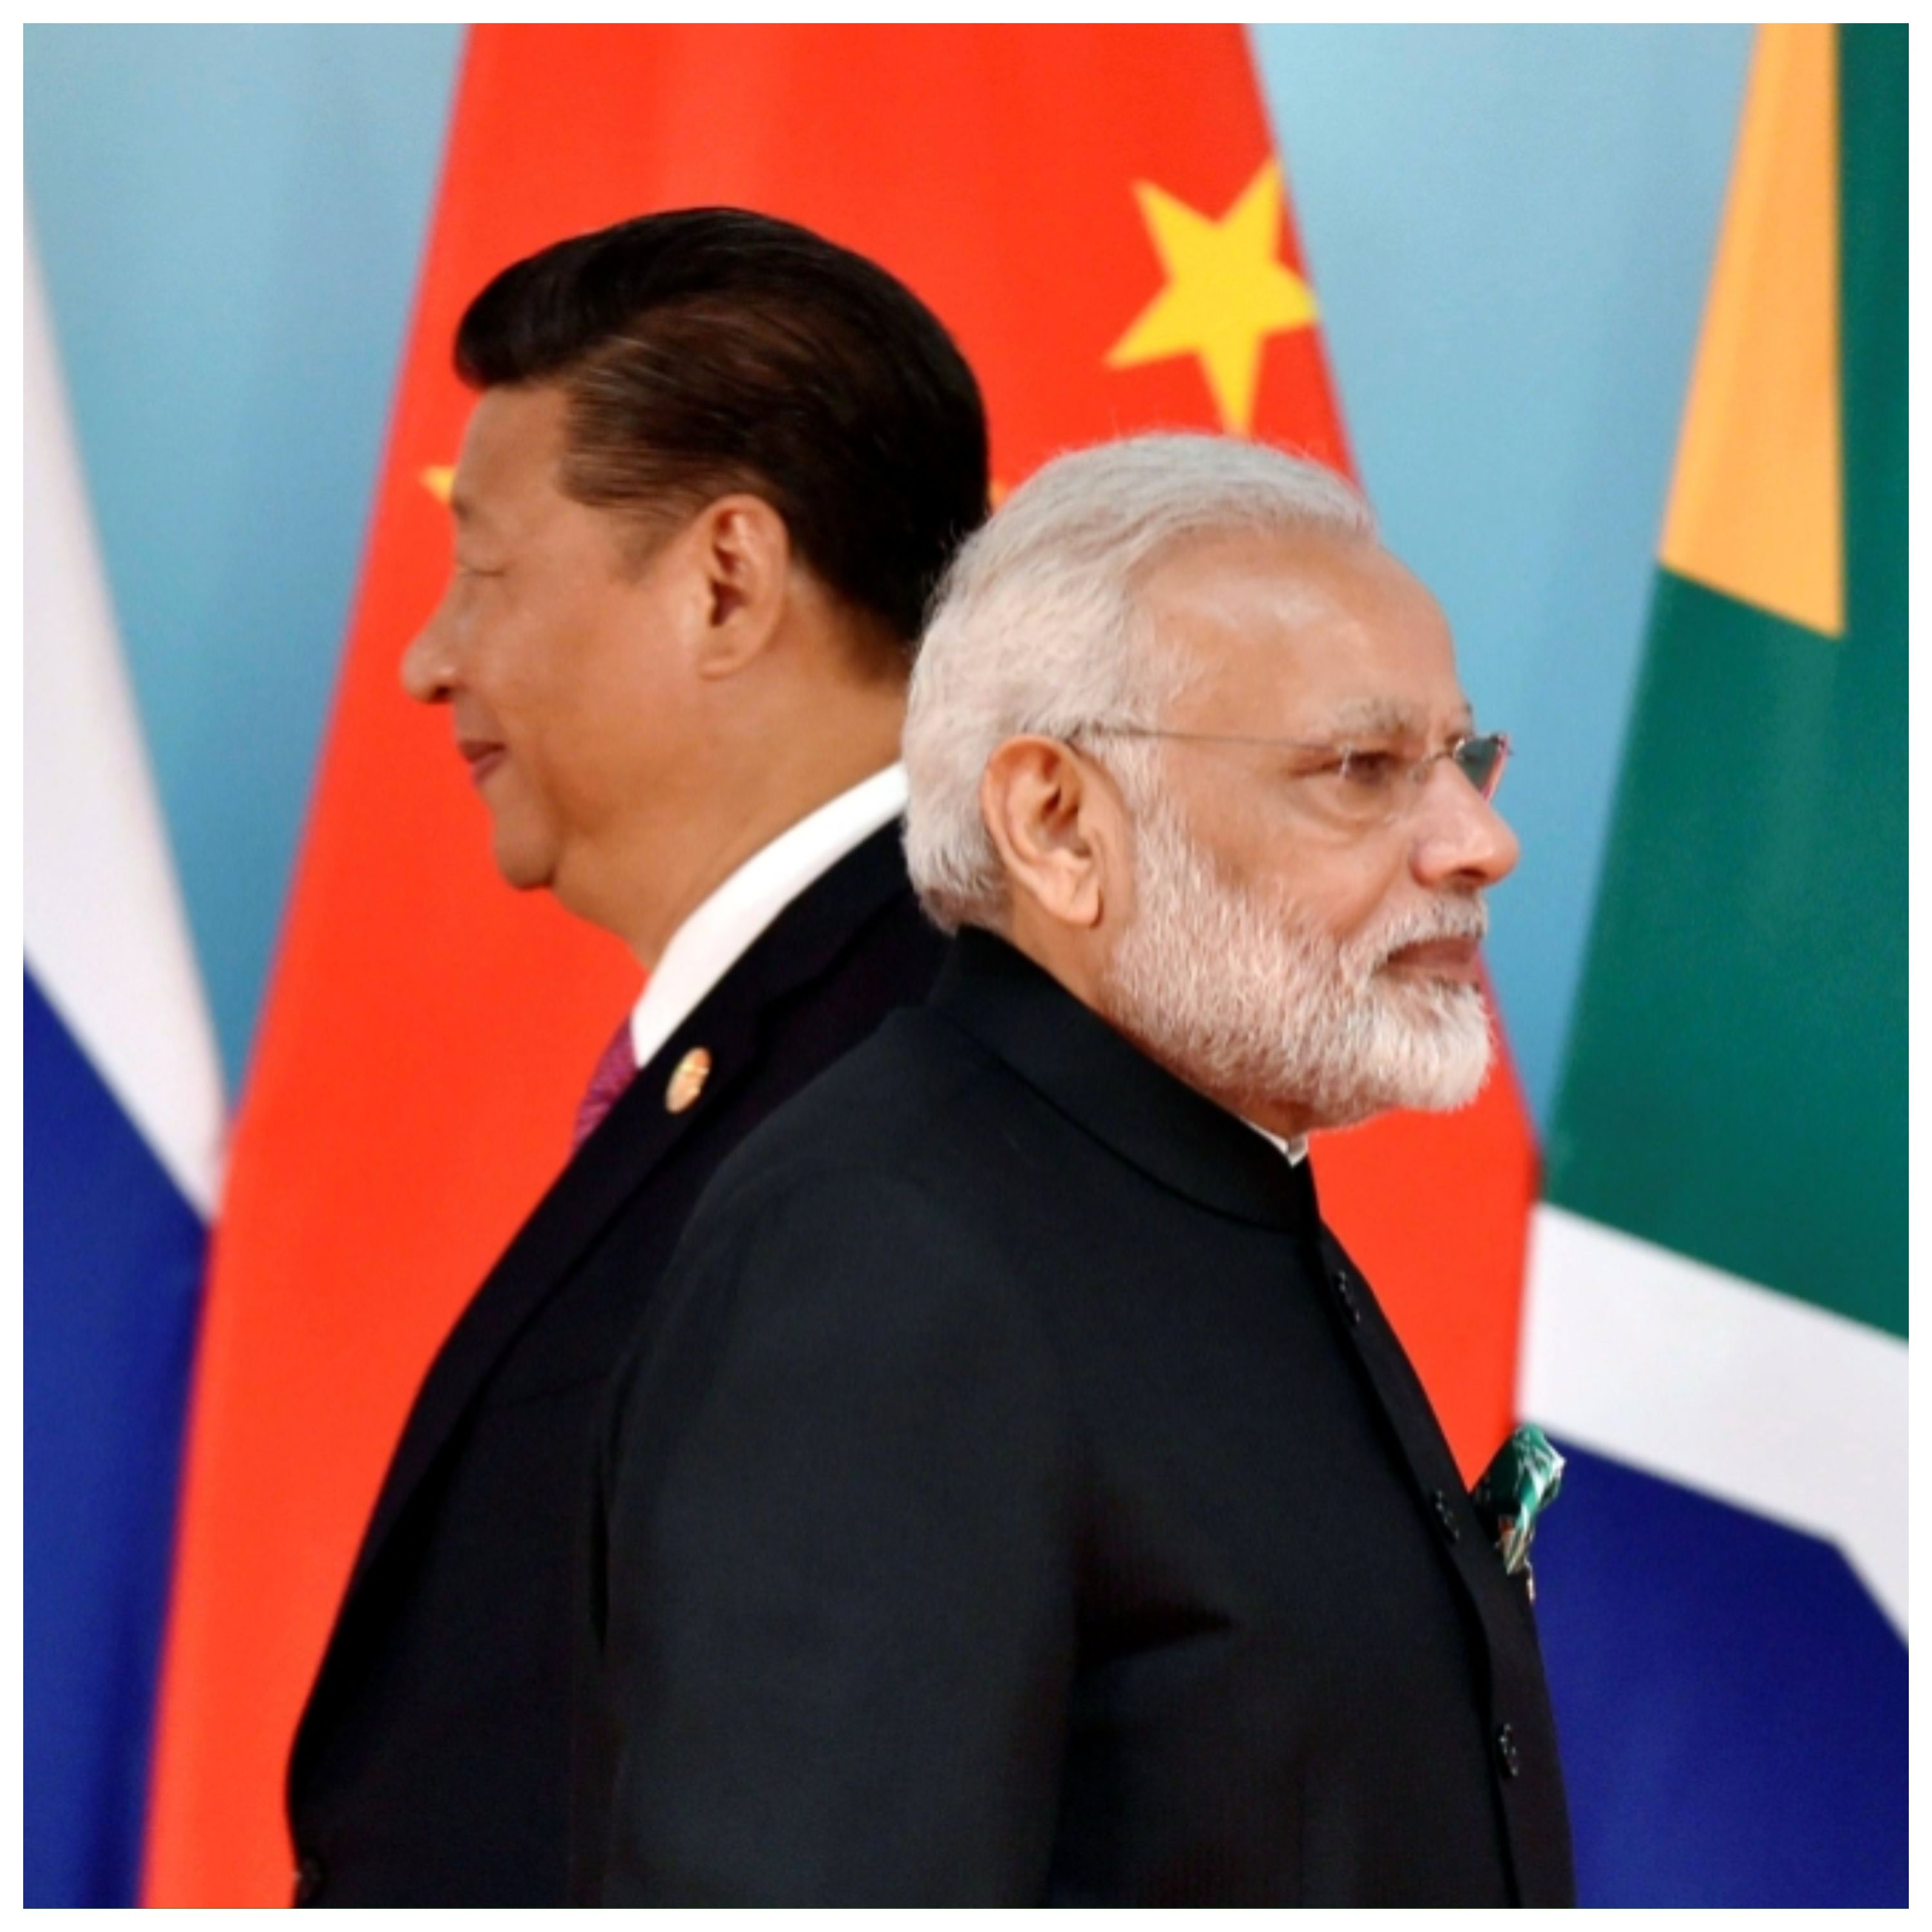 هند، چین را خلع سلاح کرد/آیا پایان افسانه اژدهای زرد فرا رسیده است؟